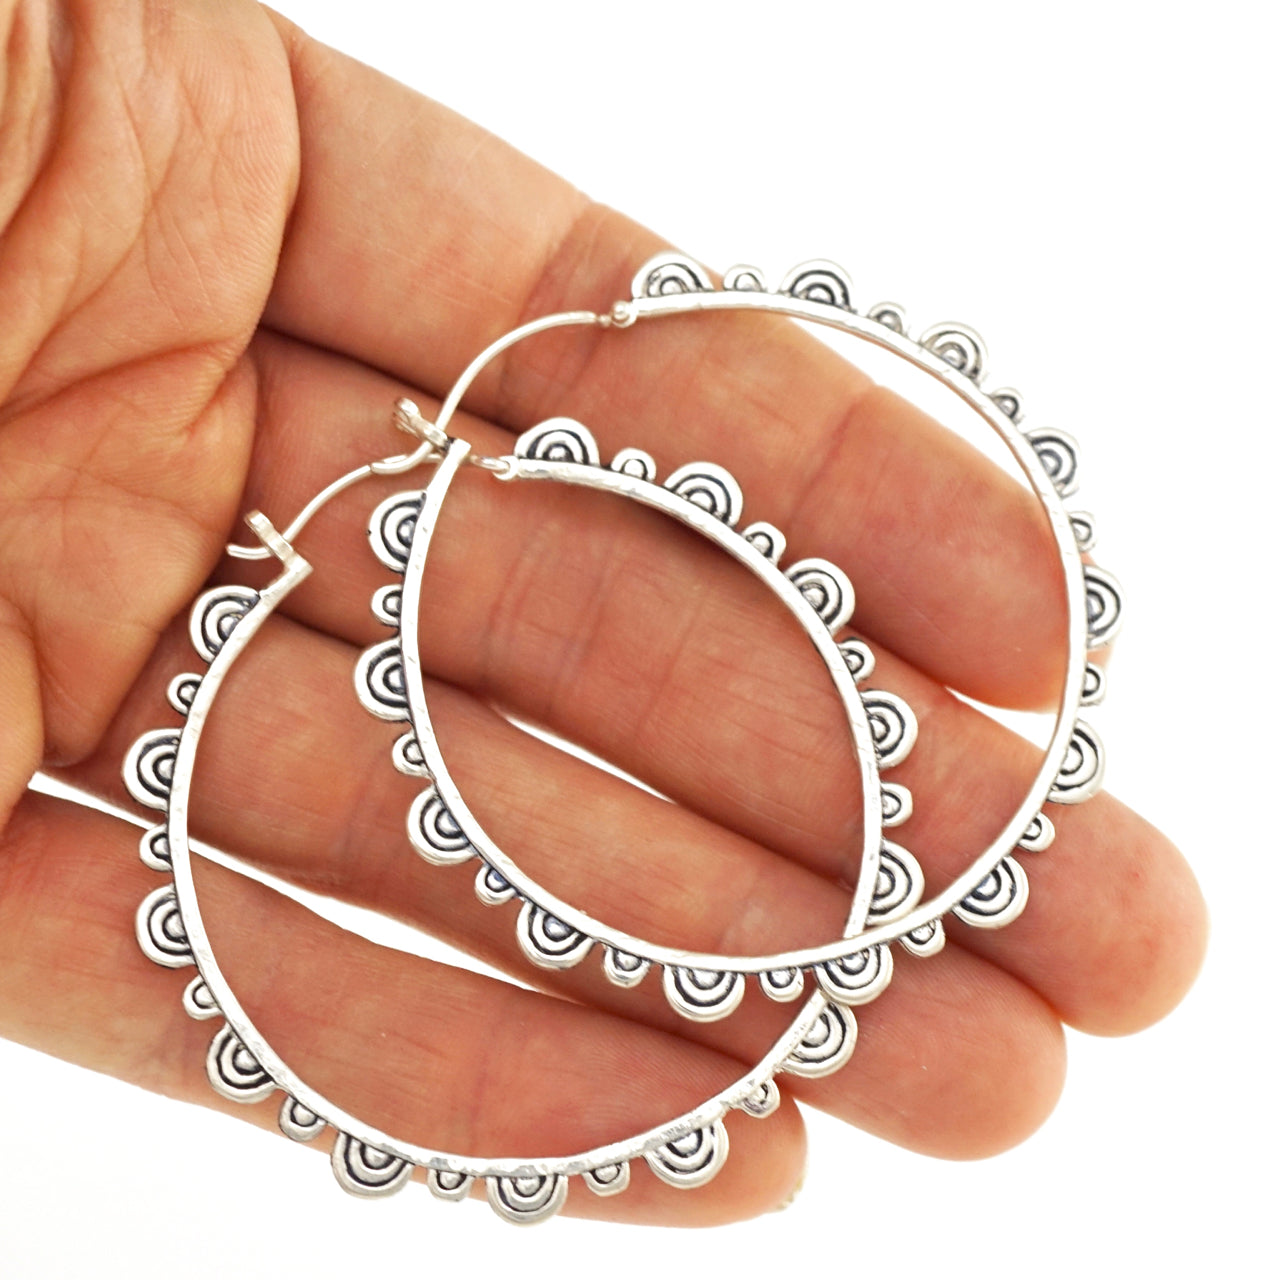 Large Silver Hoop Earrings - Solid Sterling Silver - Boho Chic Hoops - Big Statement Earrings - Yoga Mandala (210S)